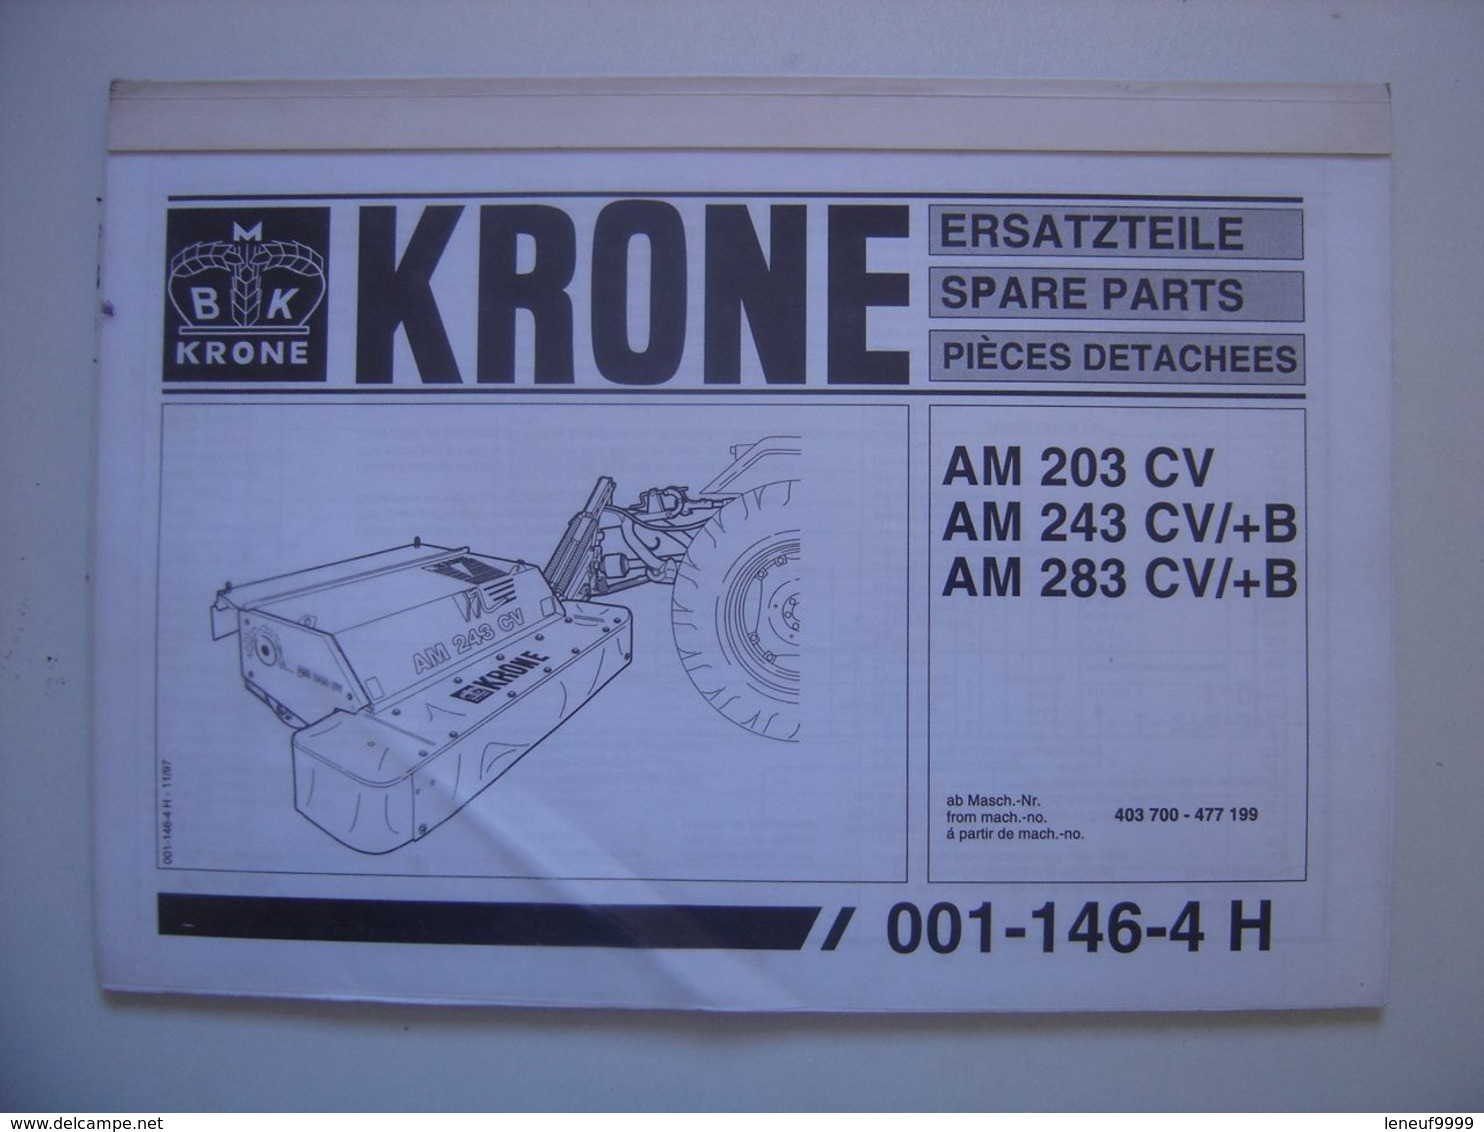 Manuel KRONE Materiel Agricole AM 243 CV Ersatzteile Spare Parts Pieces Detachee - Tractors